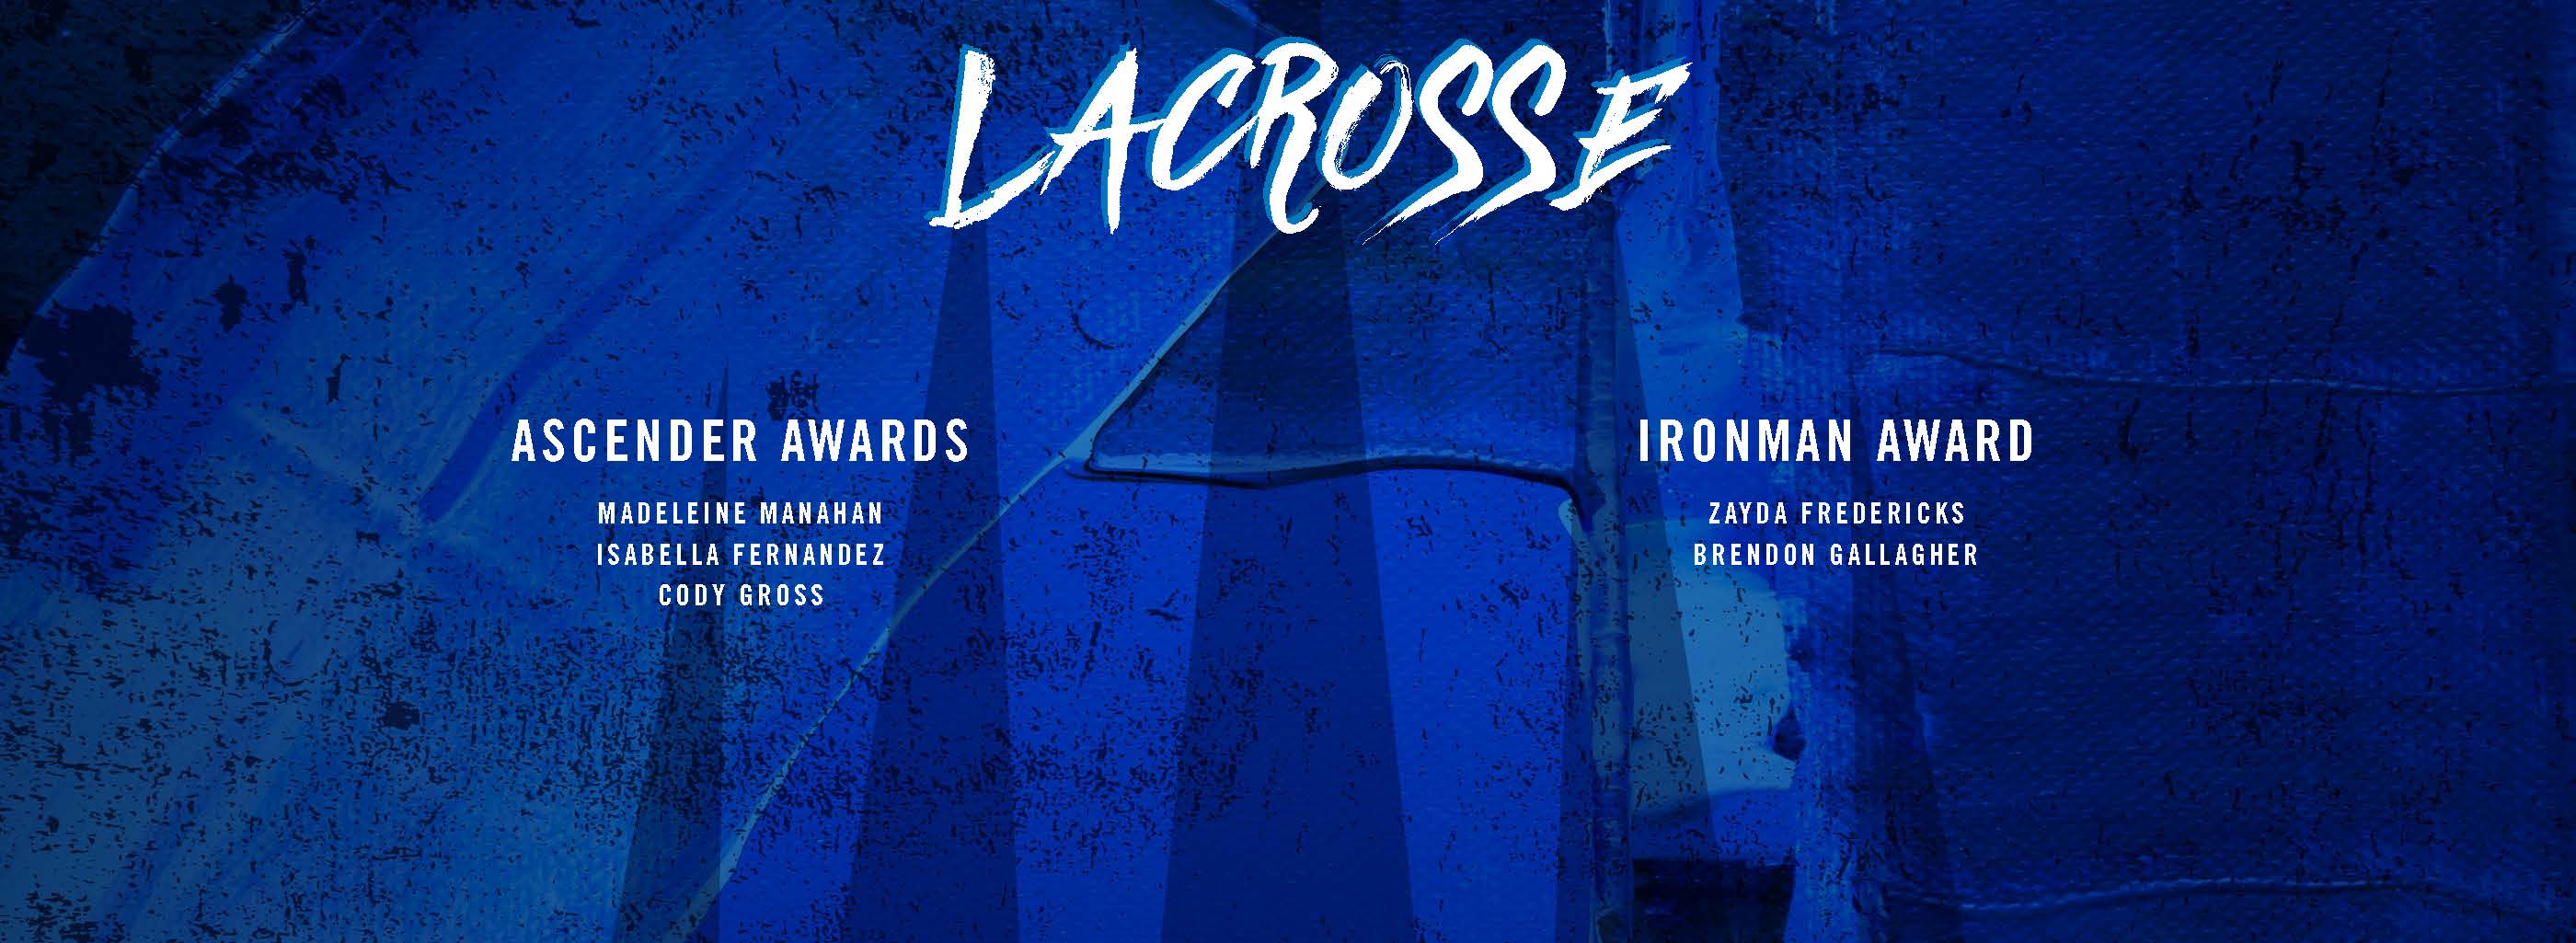 lacrosse awards